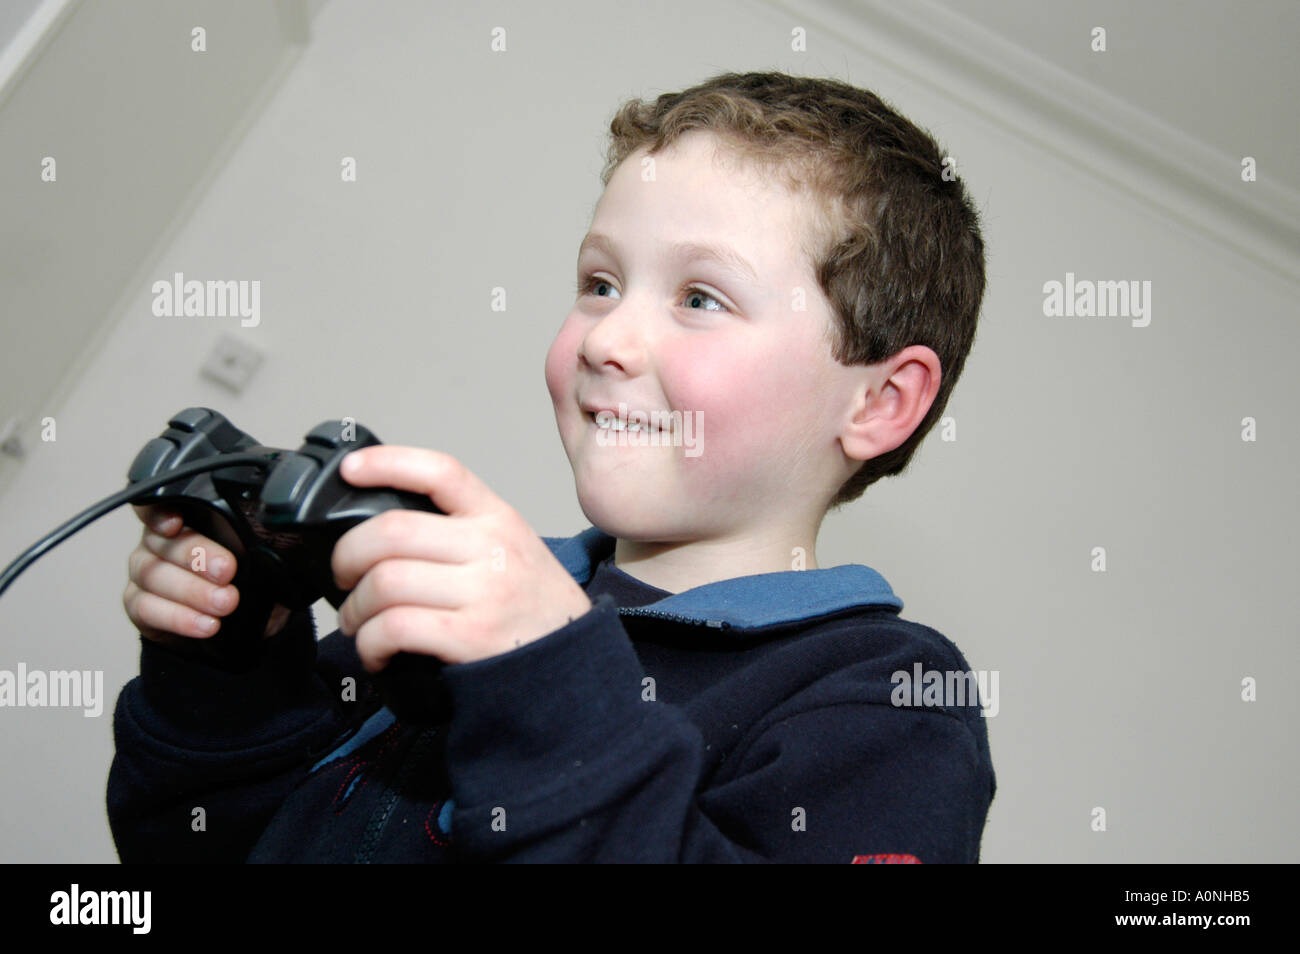 Kleiner Junge von 6 Computer Spiel auf Sony Playstation Konsole, England, UK Stockfoto